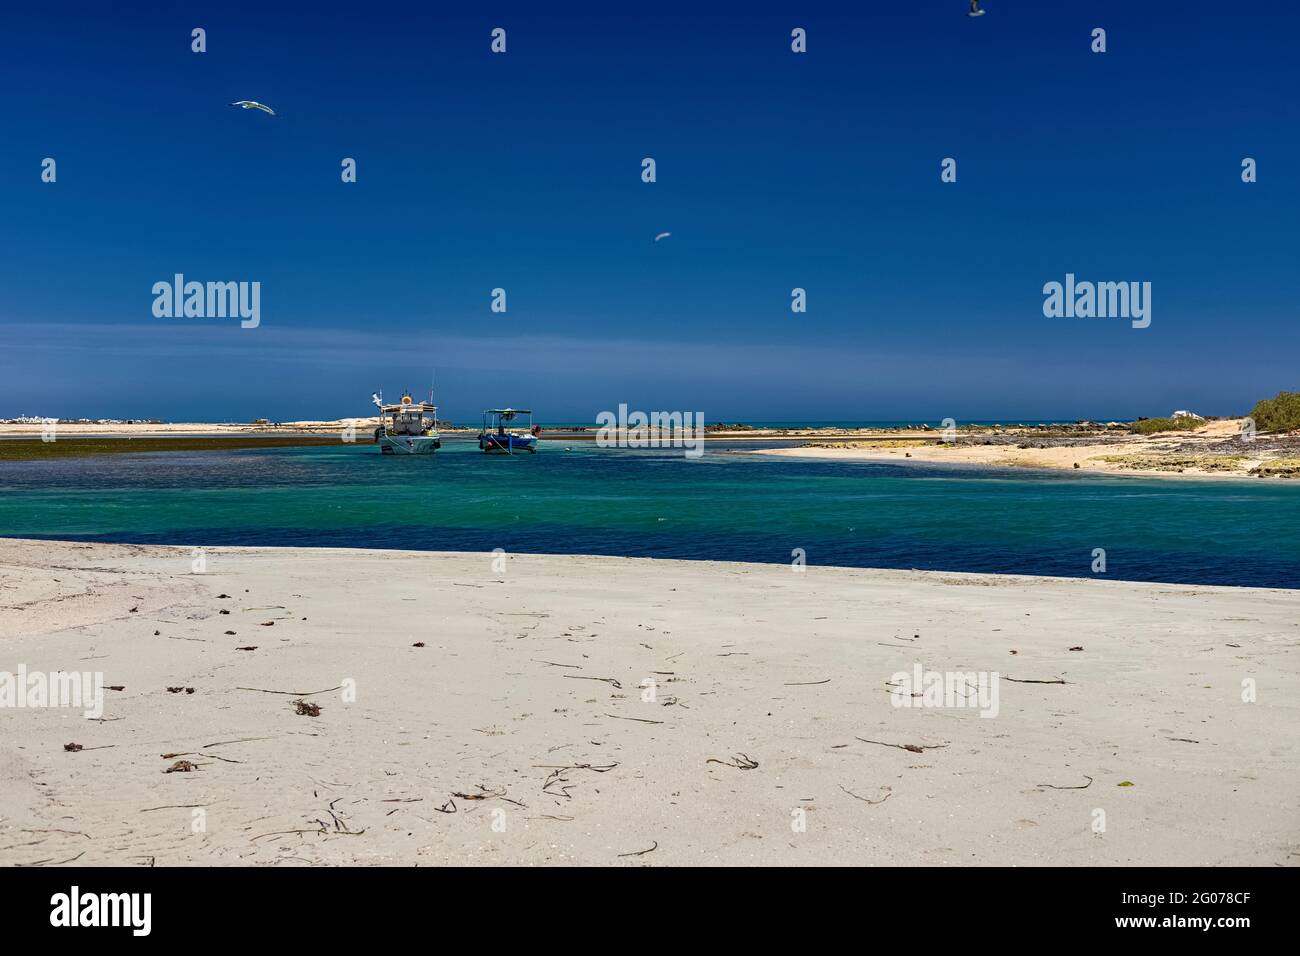 Paysage marin. Belle vue sur les bateaux dans le lagon sur la plage dans la mer Méditerranée sur l'île de Djerba. Tunisie Banque D'Images